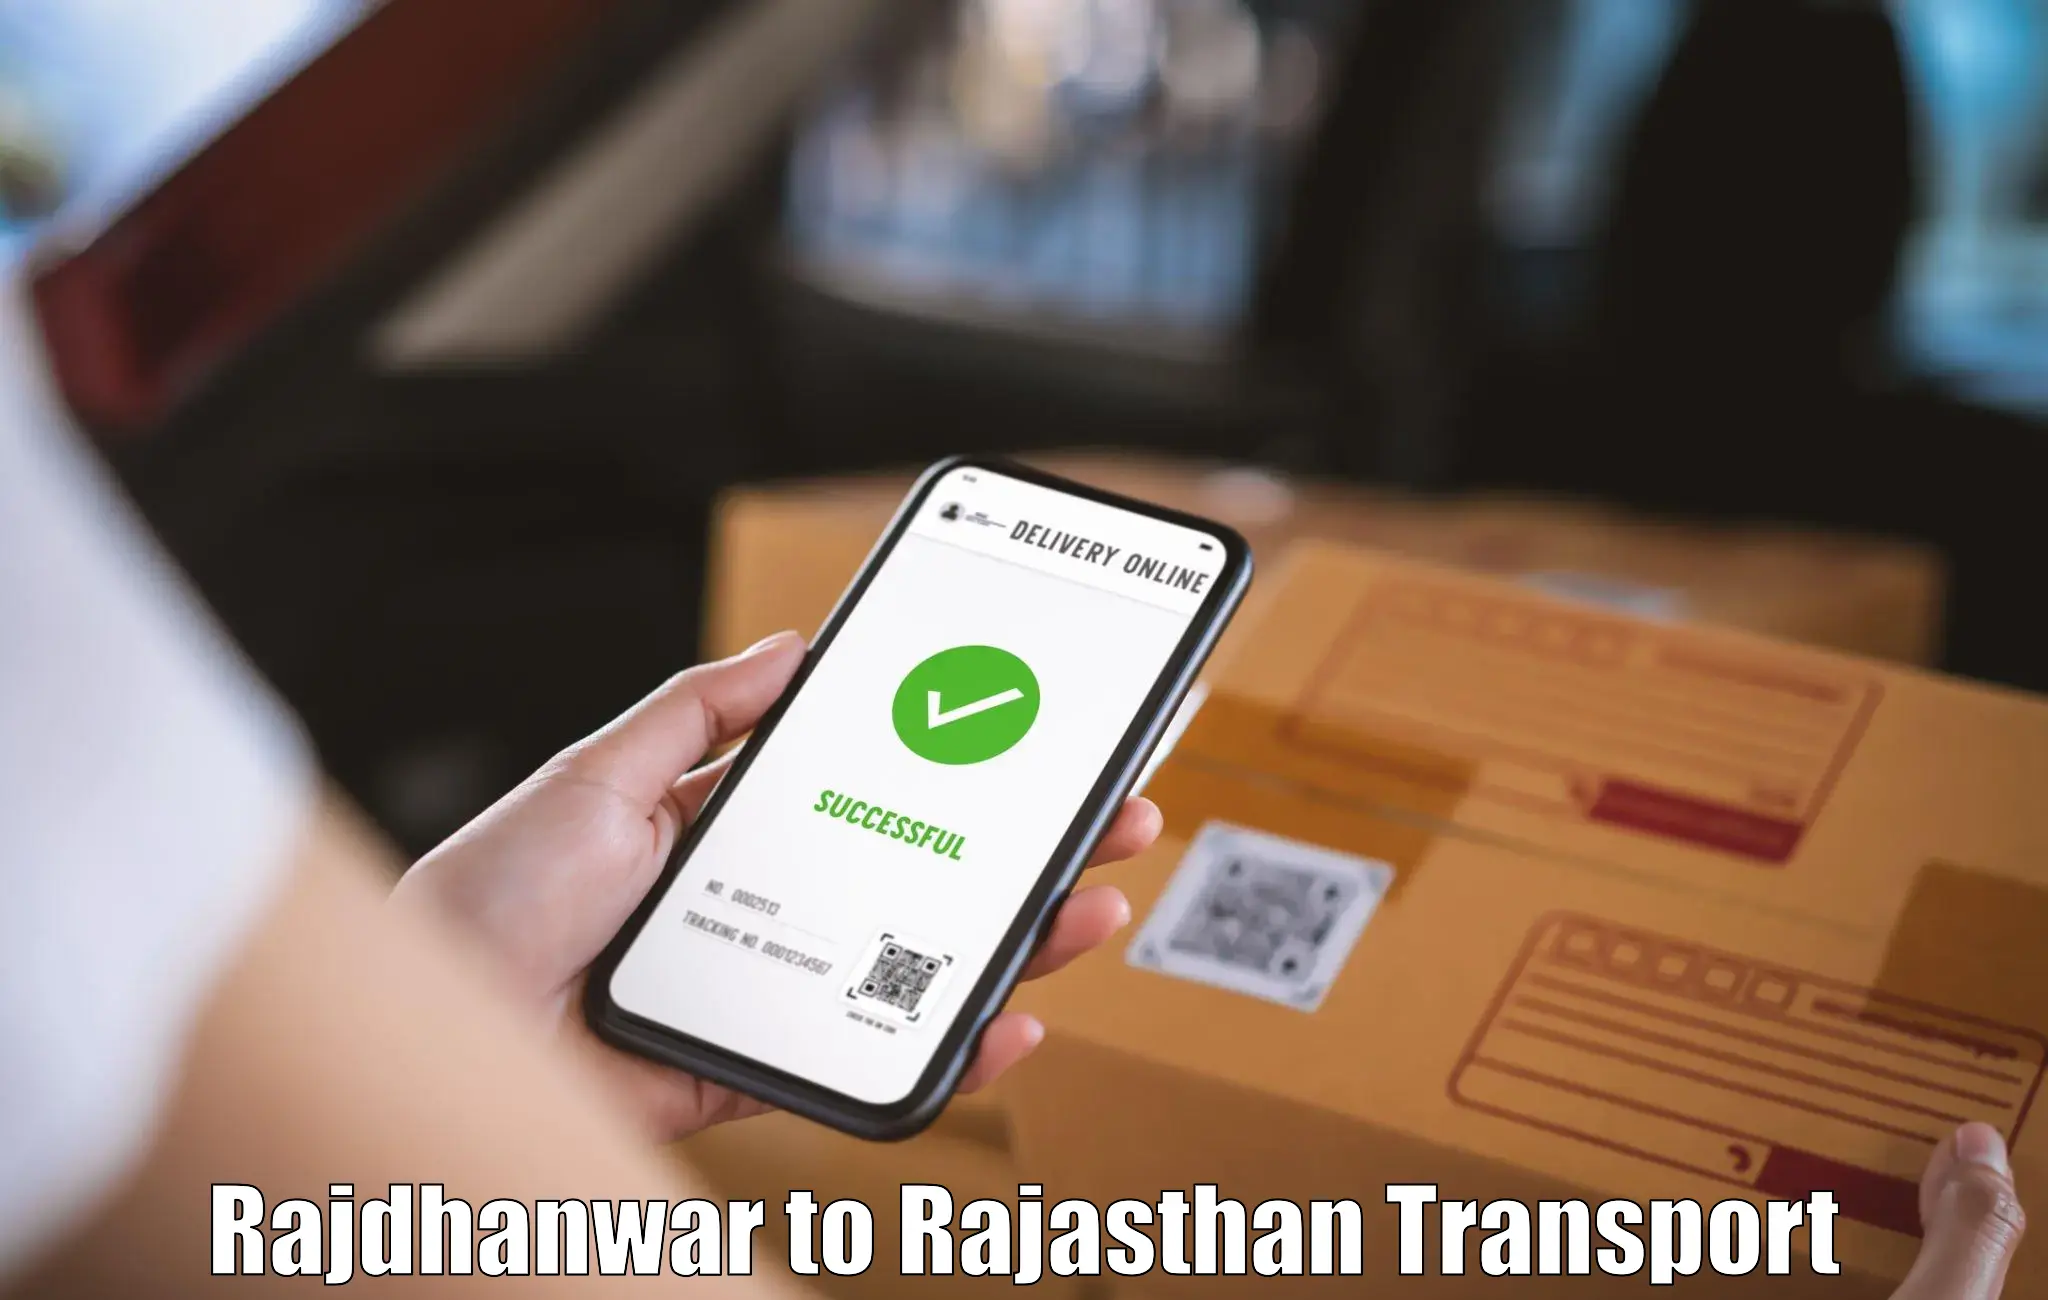 Air cargo transport services Rajdhanwar to Rajasthan